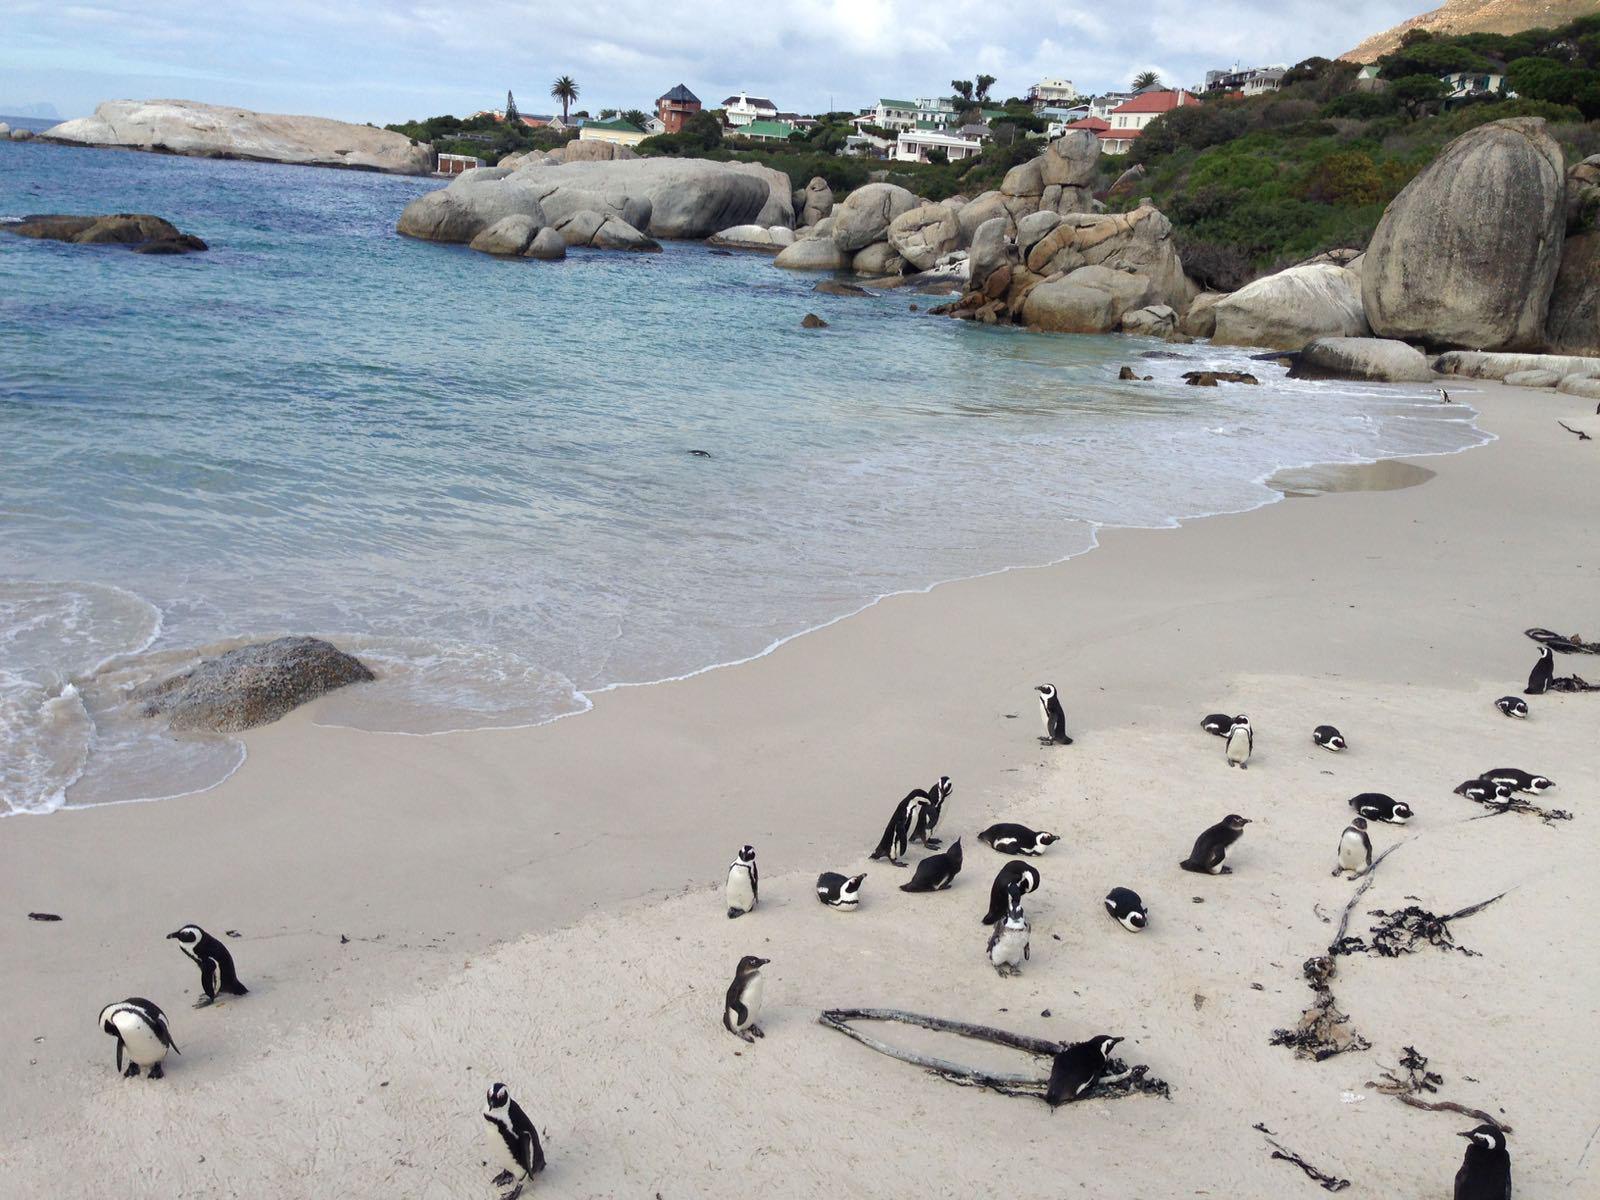 Pinguine am Strand von Kapstadt